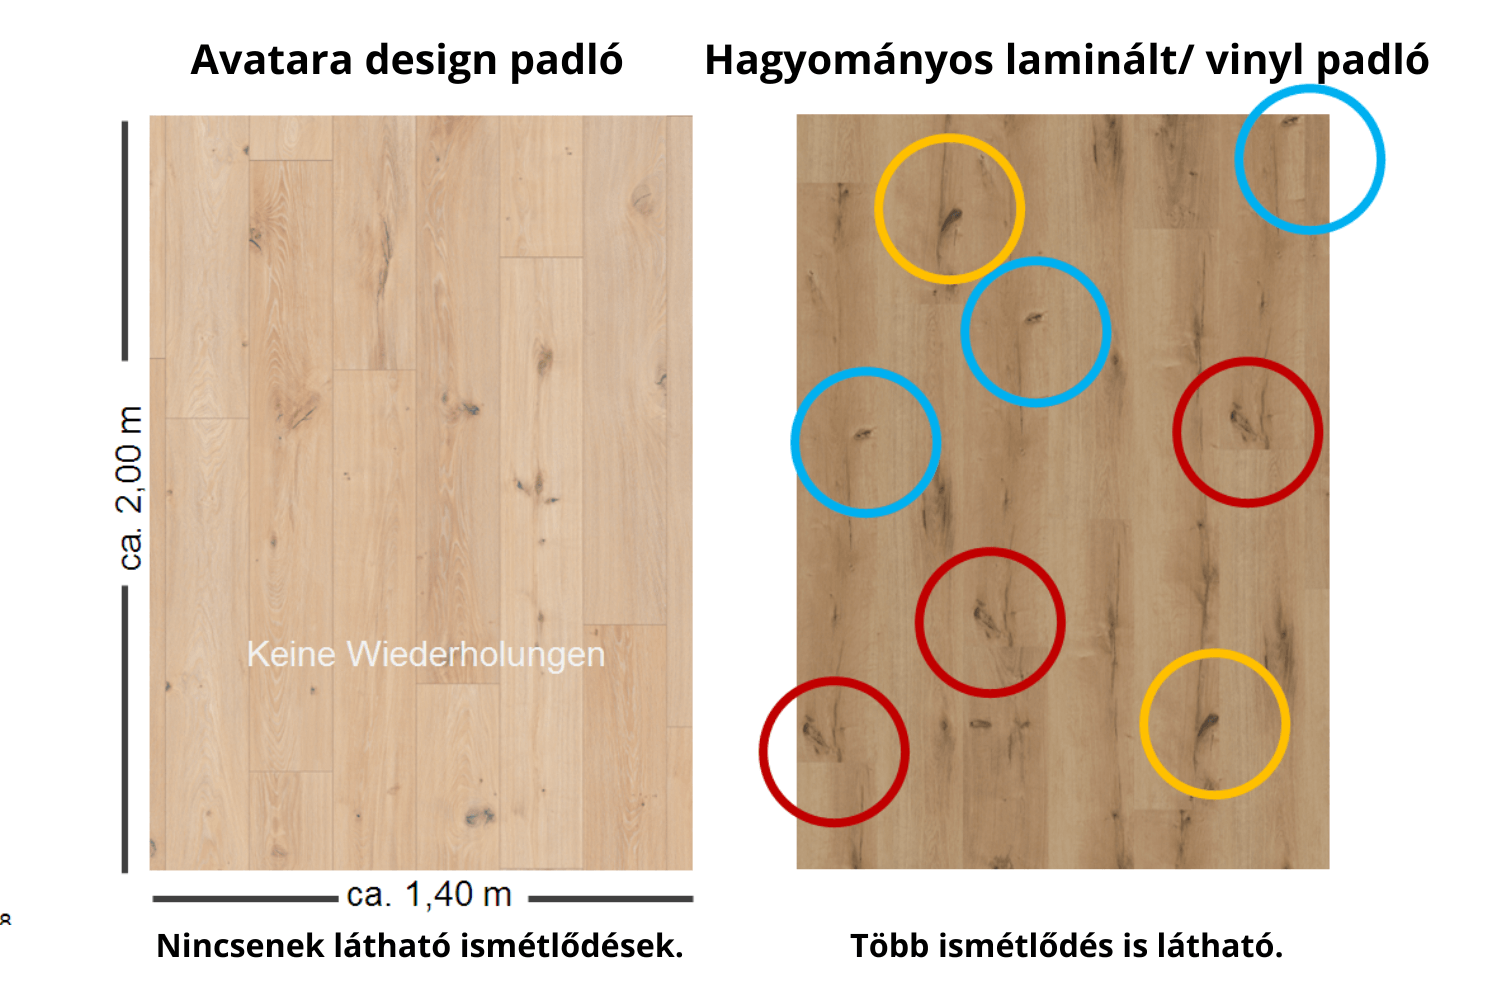 Avatara design padló felületi ismétlődések